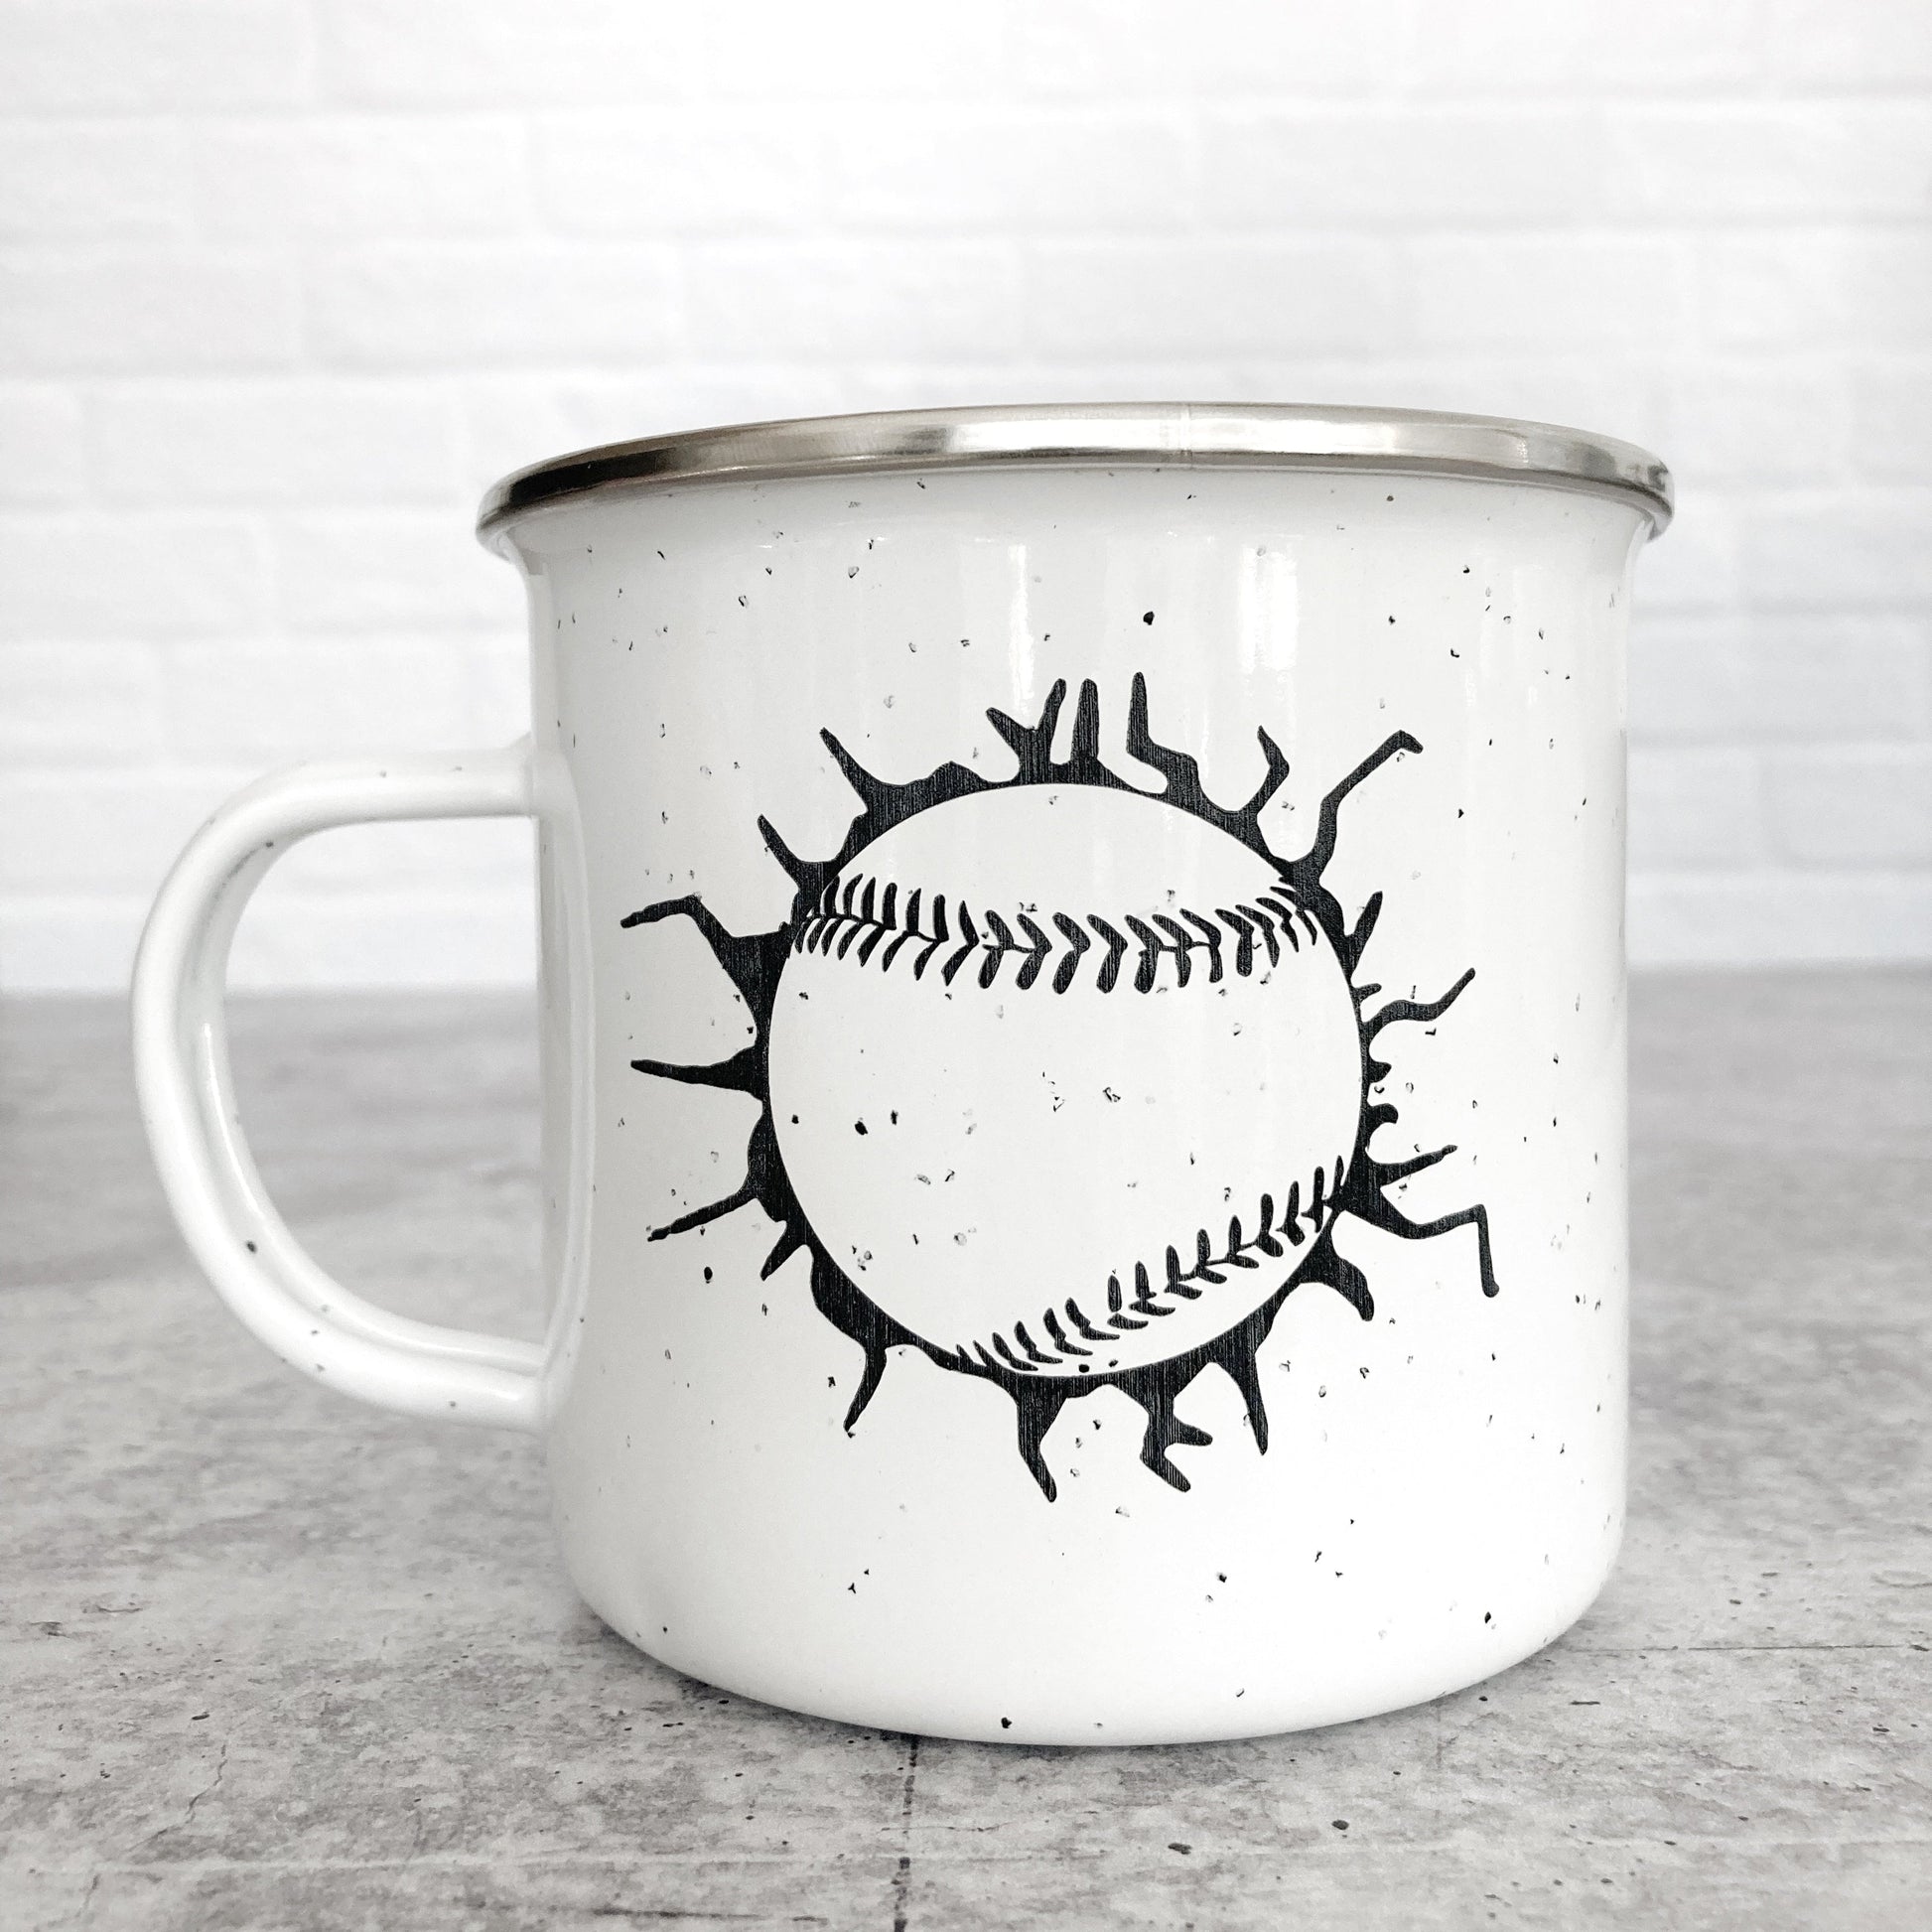 Baseball Cracked Glass Design on a white enamel mug